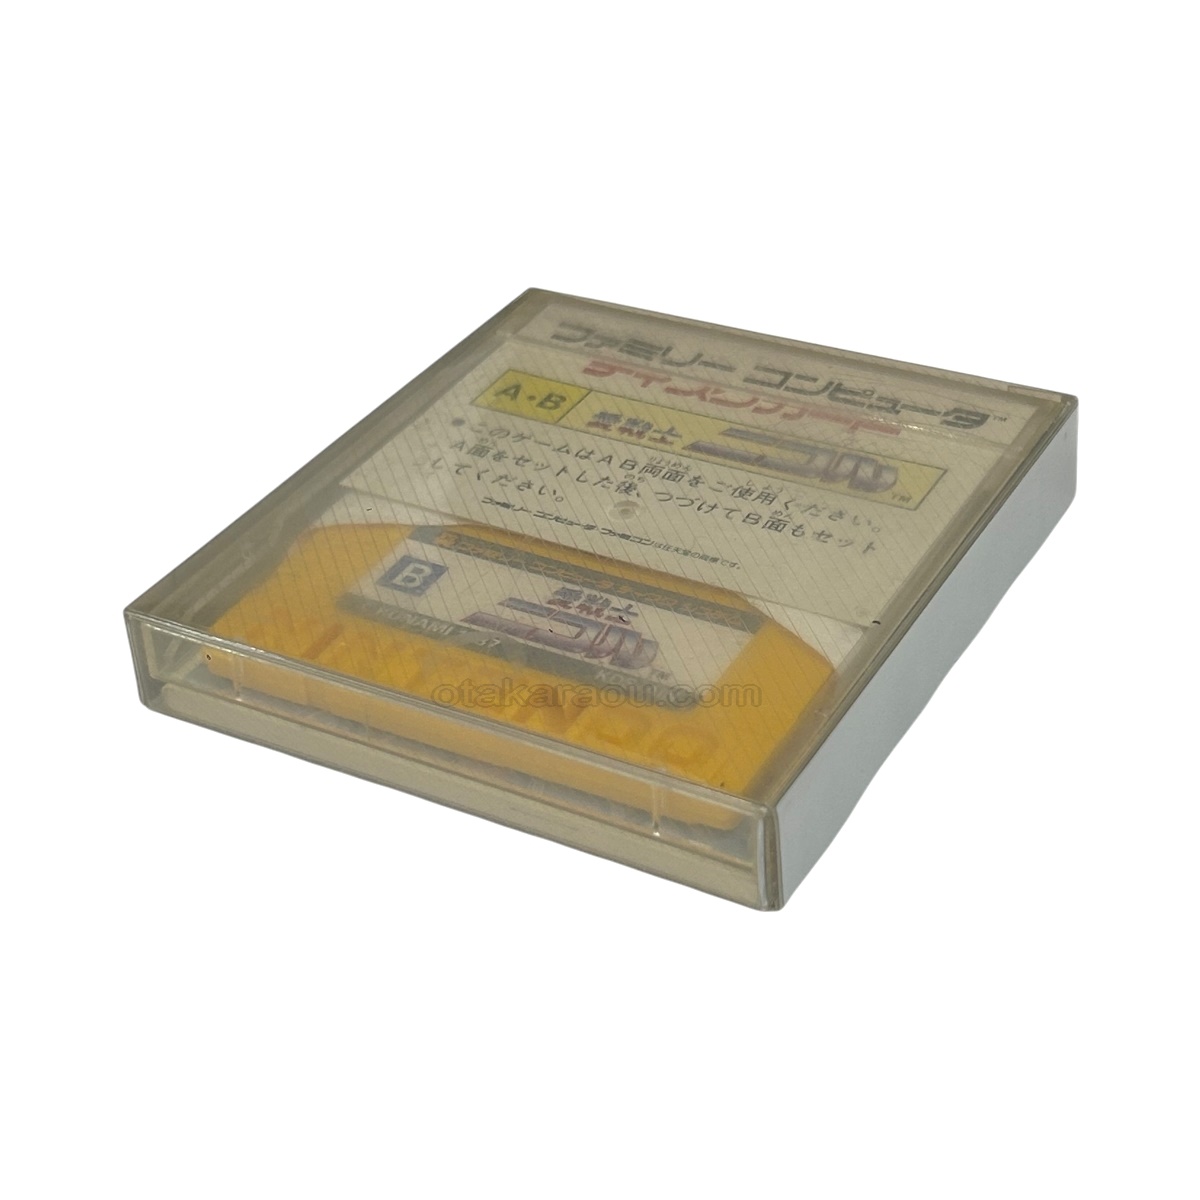 ファミコン ディスクシステムソフト 愛戦士ニコル・カードを販売 買取 